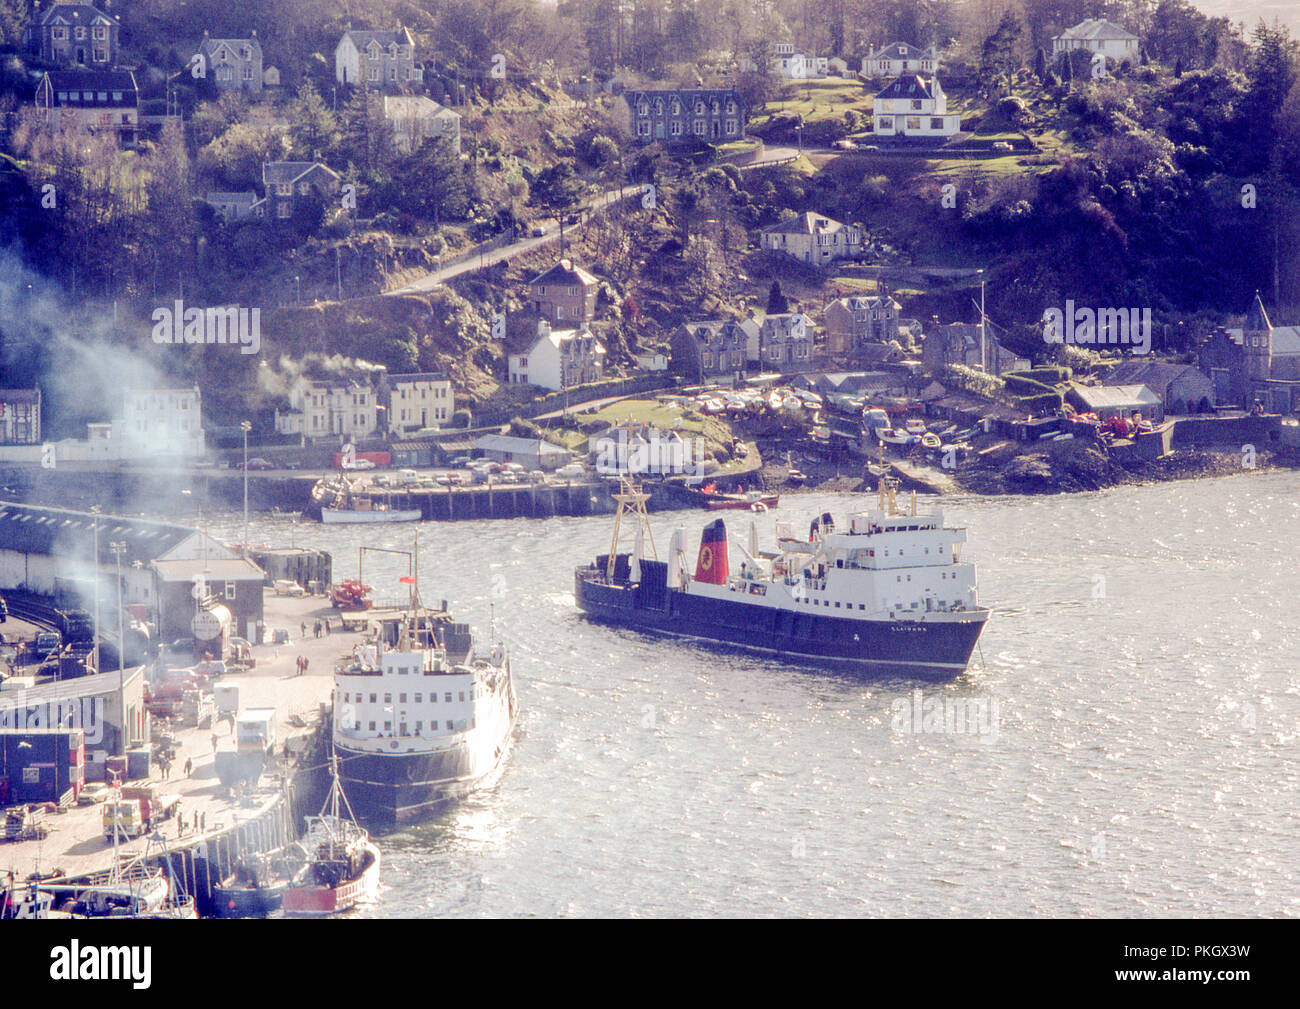 Caledonian MacBrayne (CalMac Ferry) denominado Claymore vela fuera del puerto de Oban, en mayo de 1980. Imagen de archivo original. Foto de stock